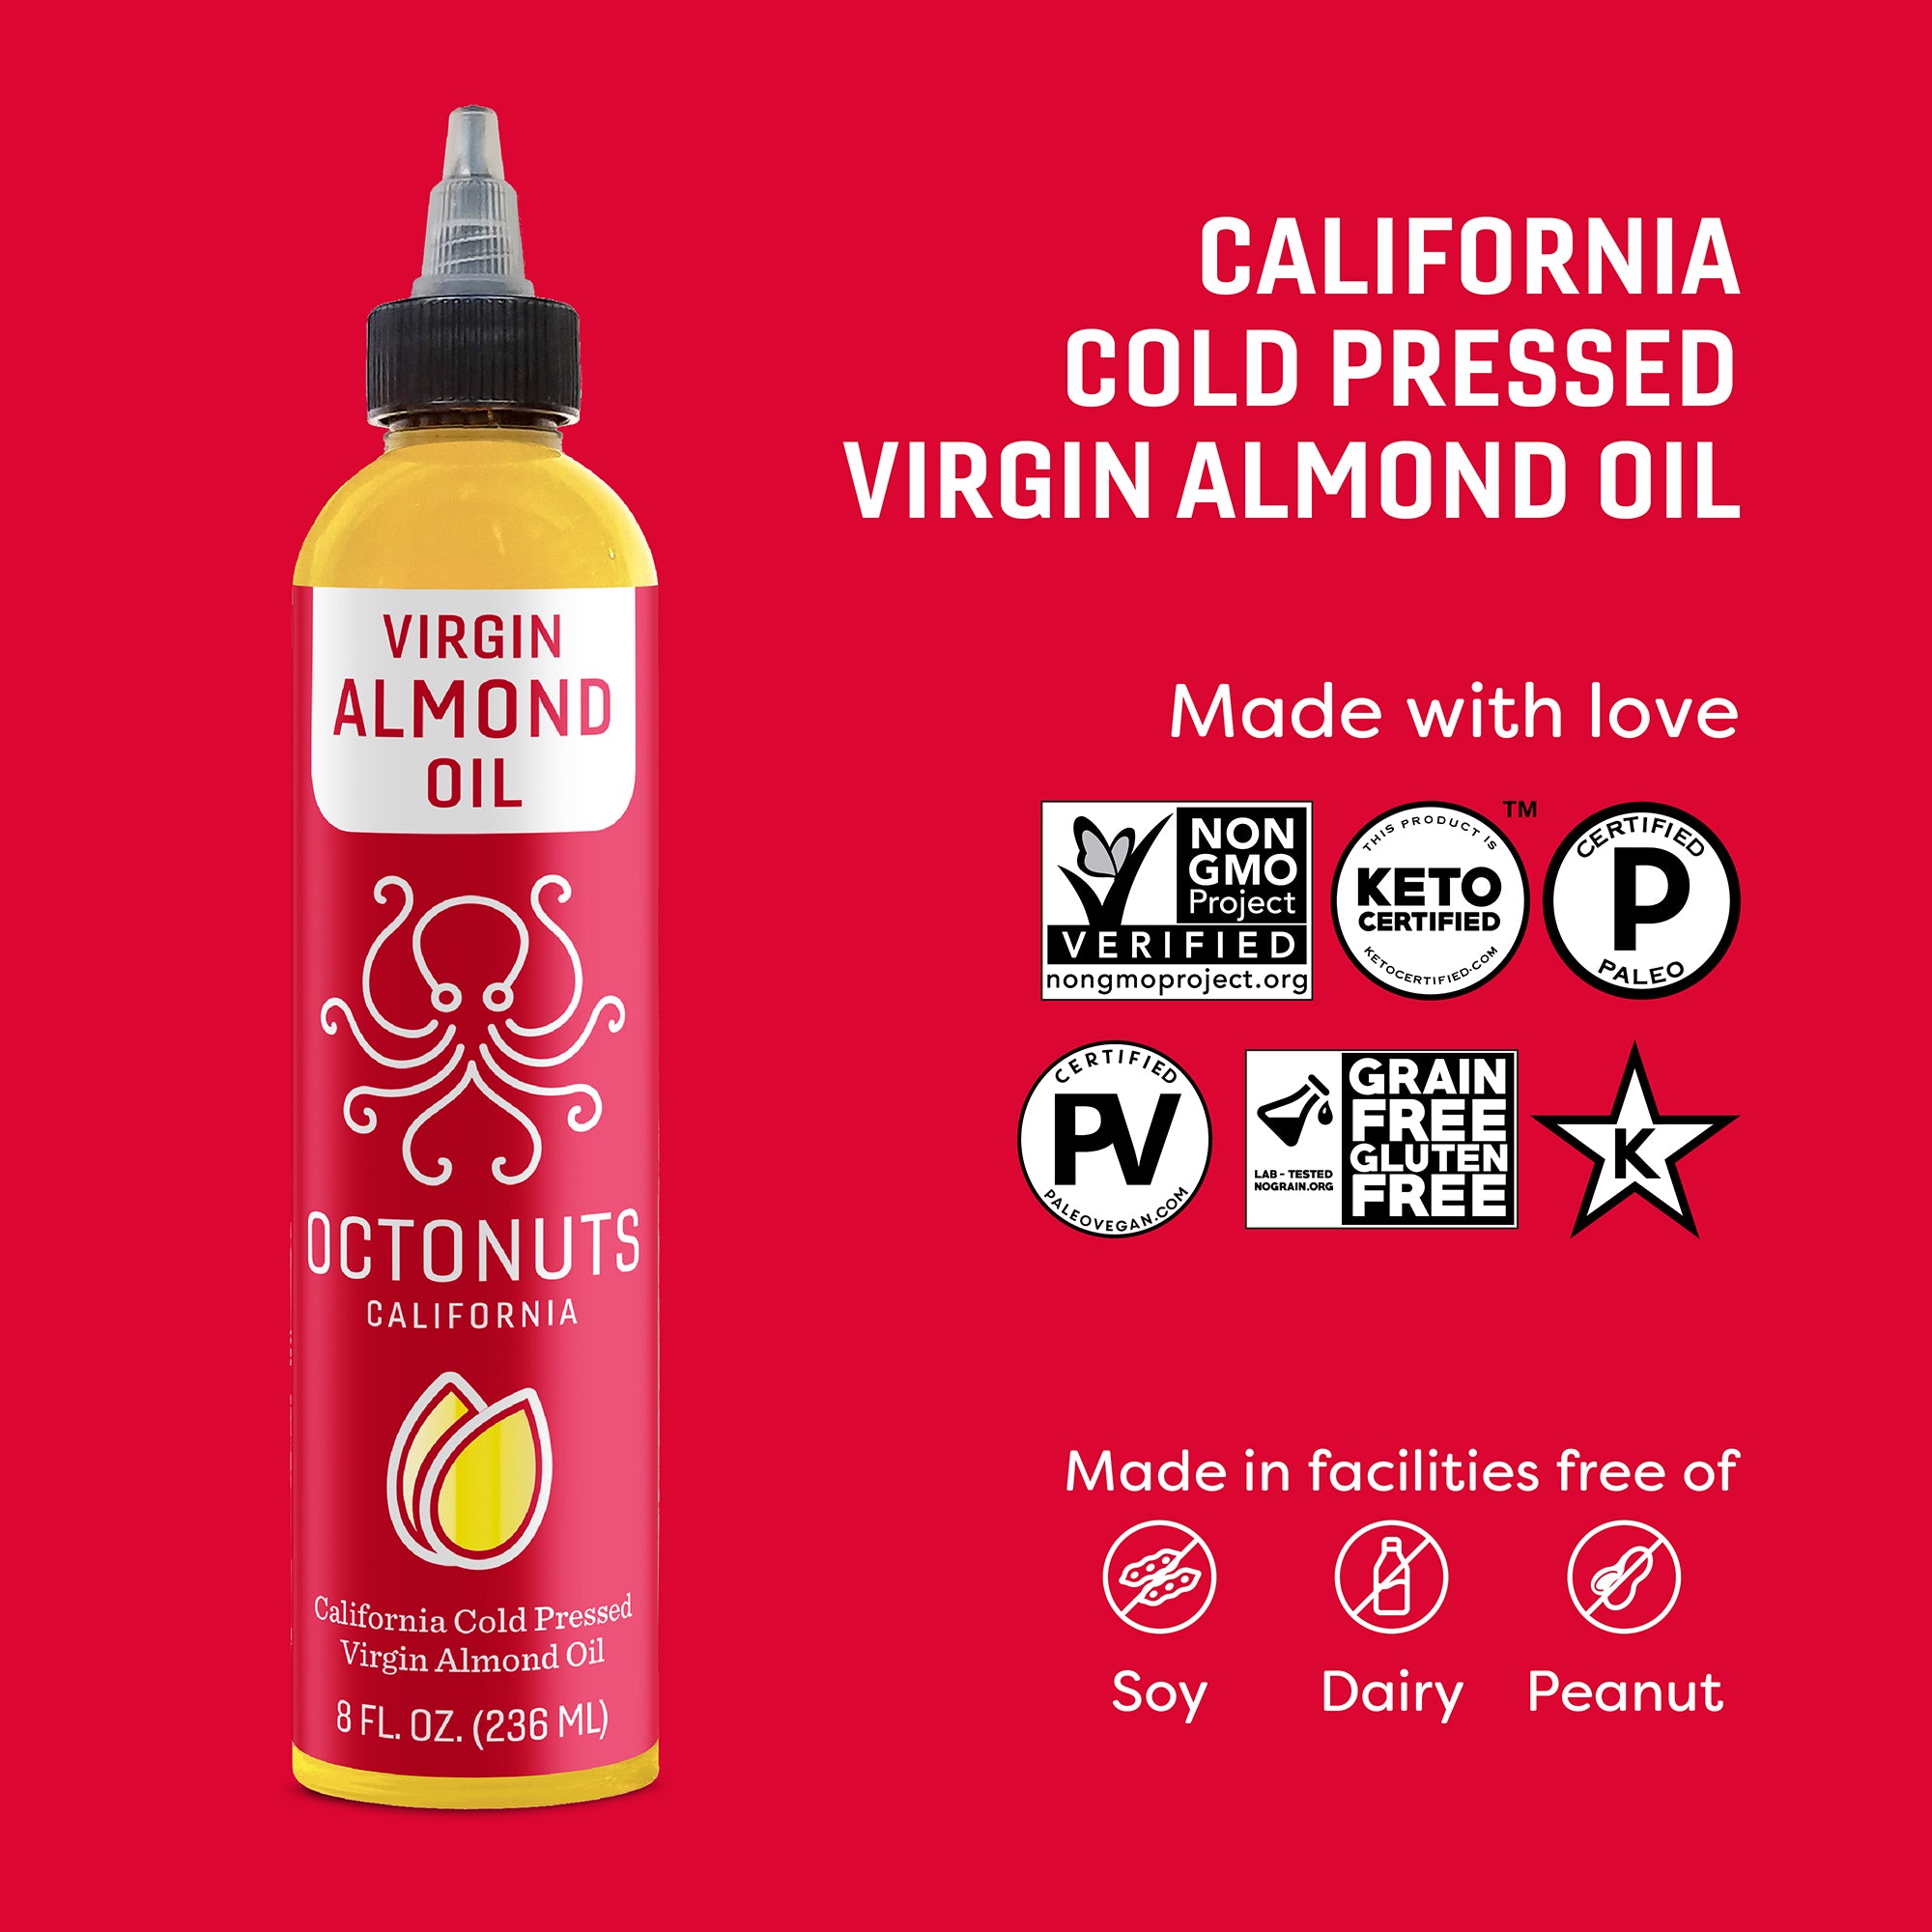 California Cold Pressed Virgin Almond Oil